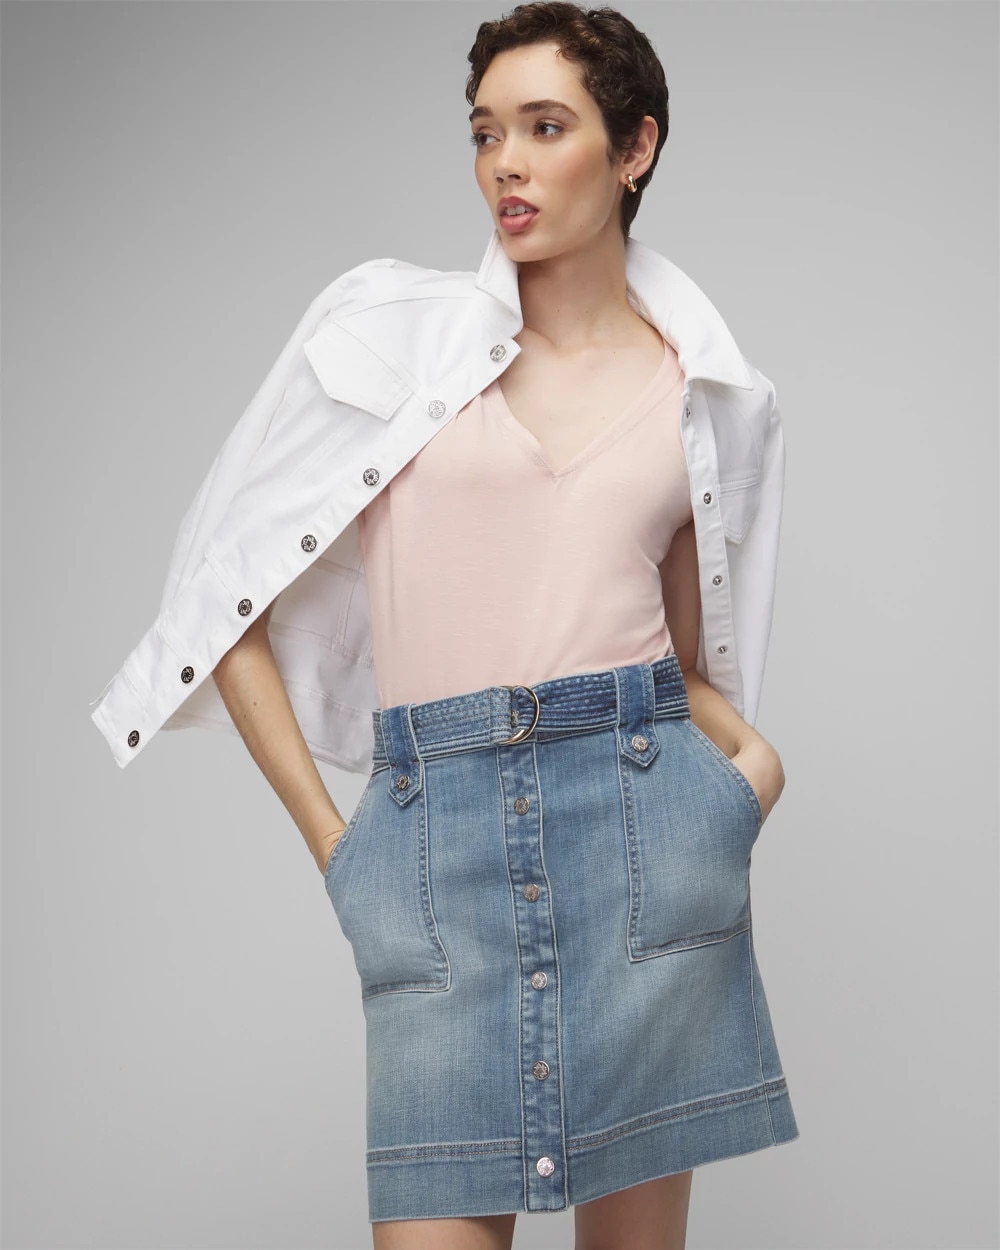 150cm Petite girls Design Sense Retro Denim Skirt Women High Waist A Word  Package Hip Split Mid Length Version XS Appear High - AliExpress